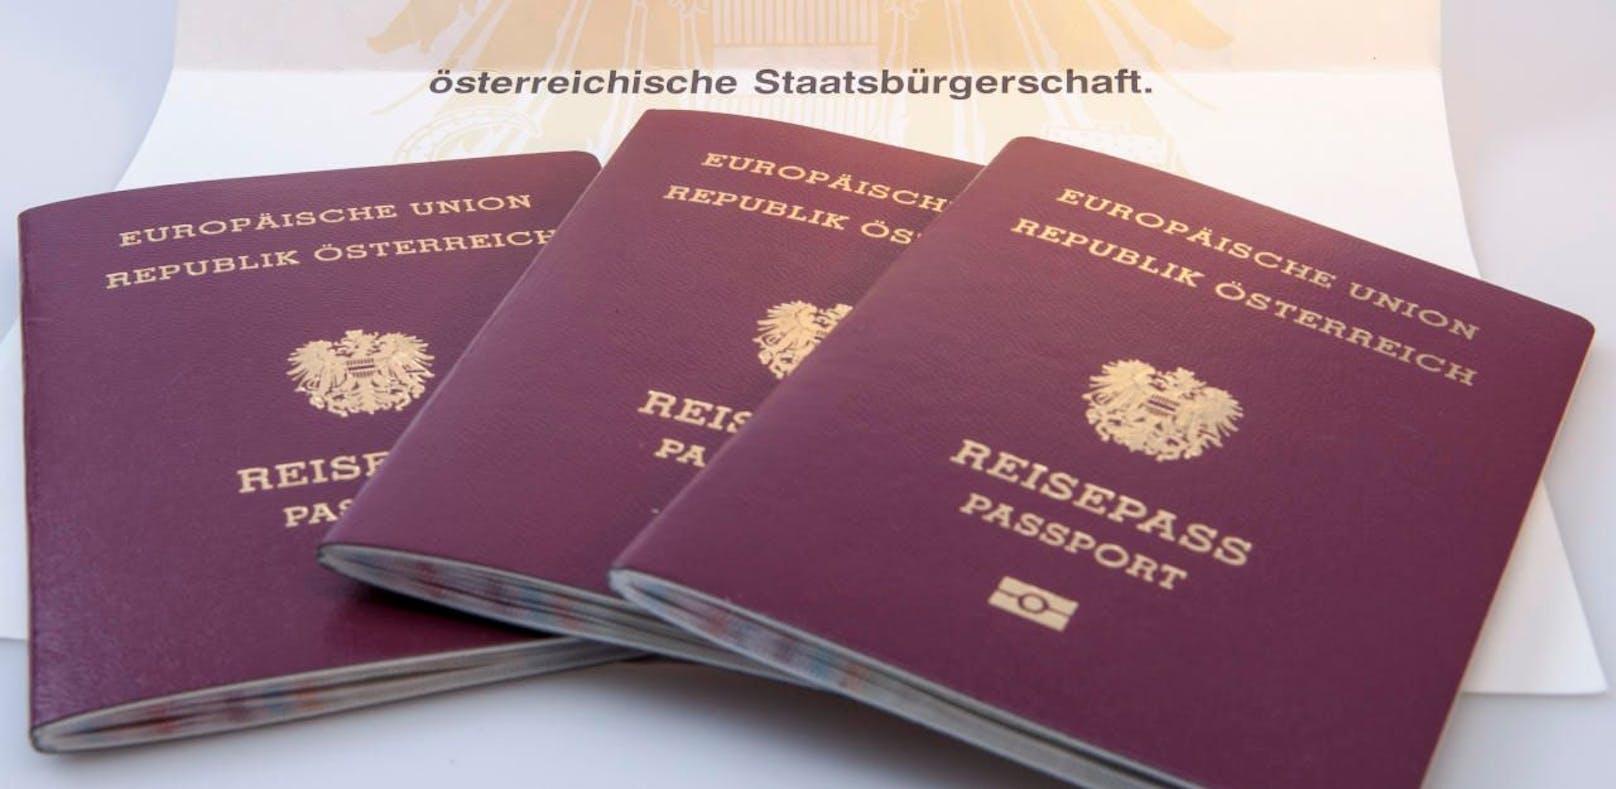 Der Andrang auf die Passbehörde ist enorm. Bereits innerhalb von fünf Monaten wurden schon 12.000 Pässe ausgestellt (Symbolfoto.)